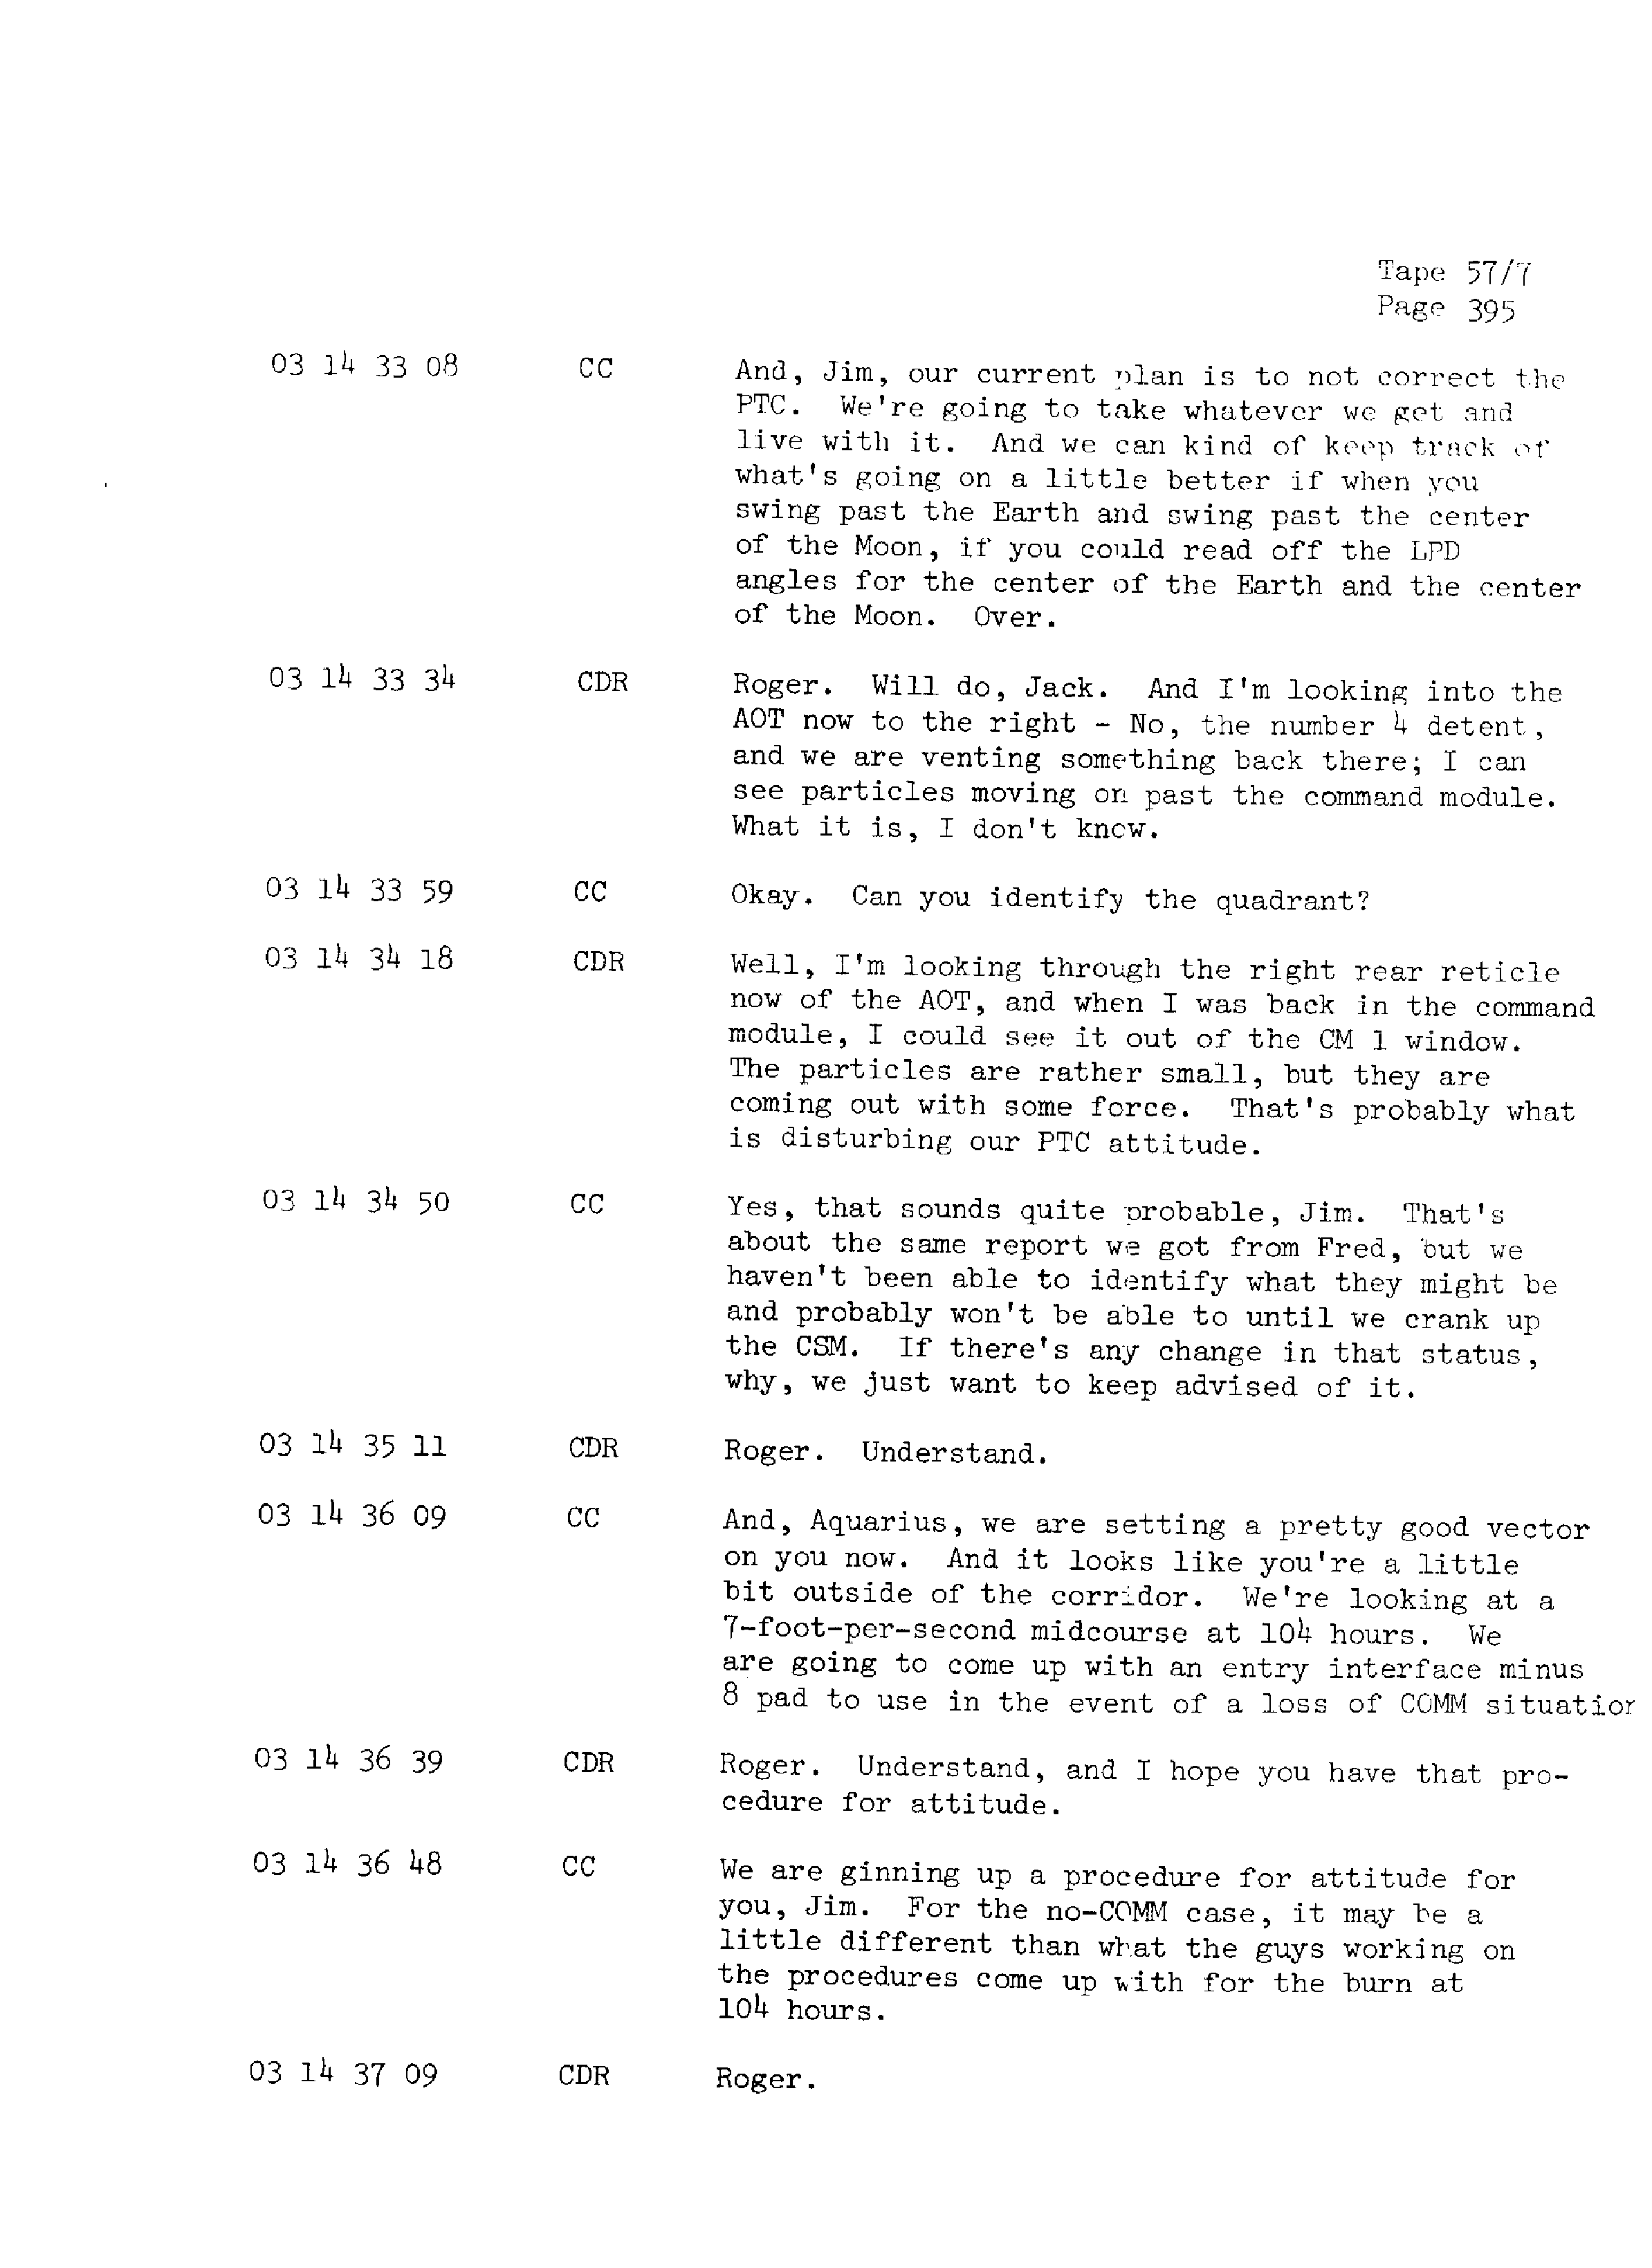 Page 402 of Apollo 13’s original transcript